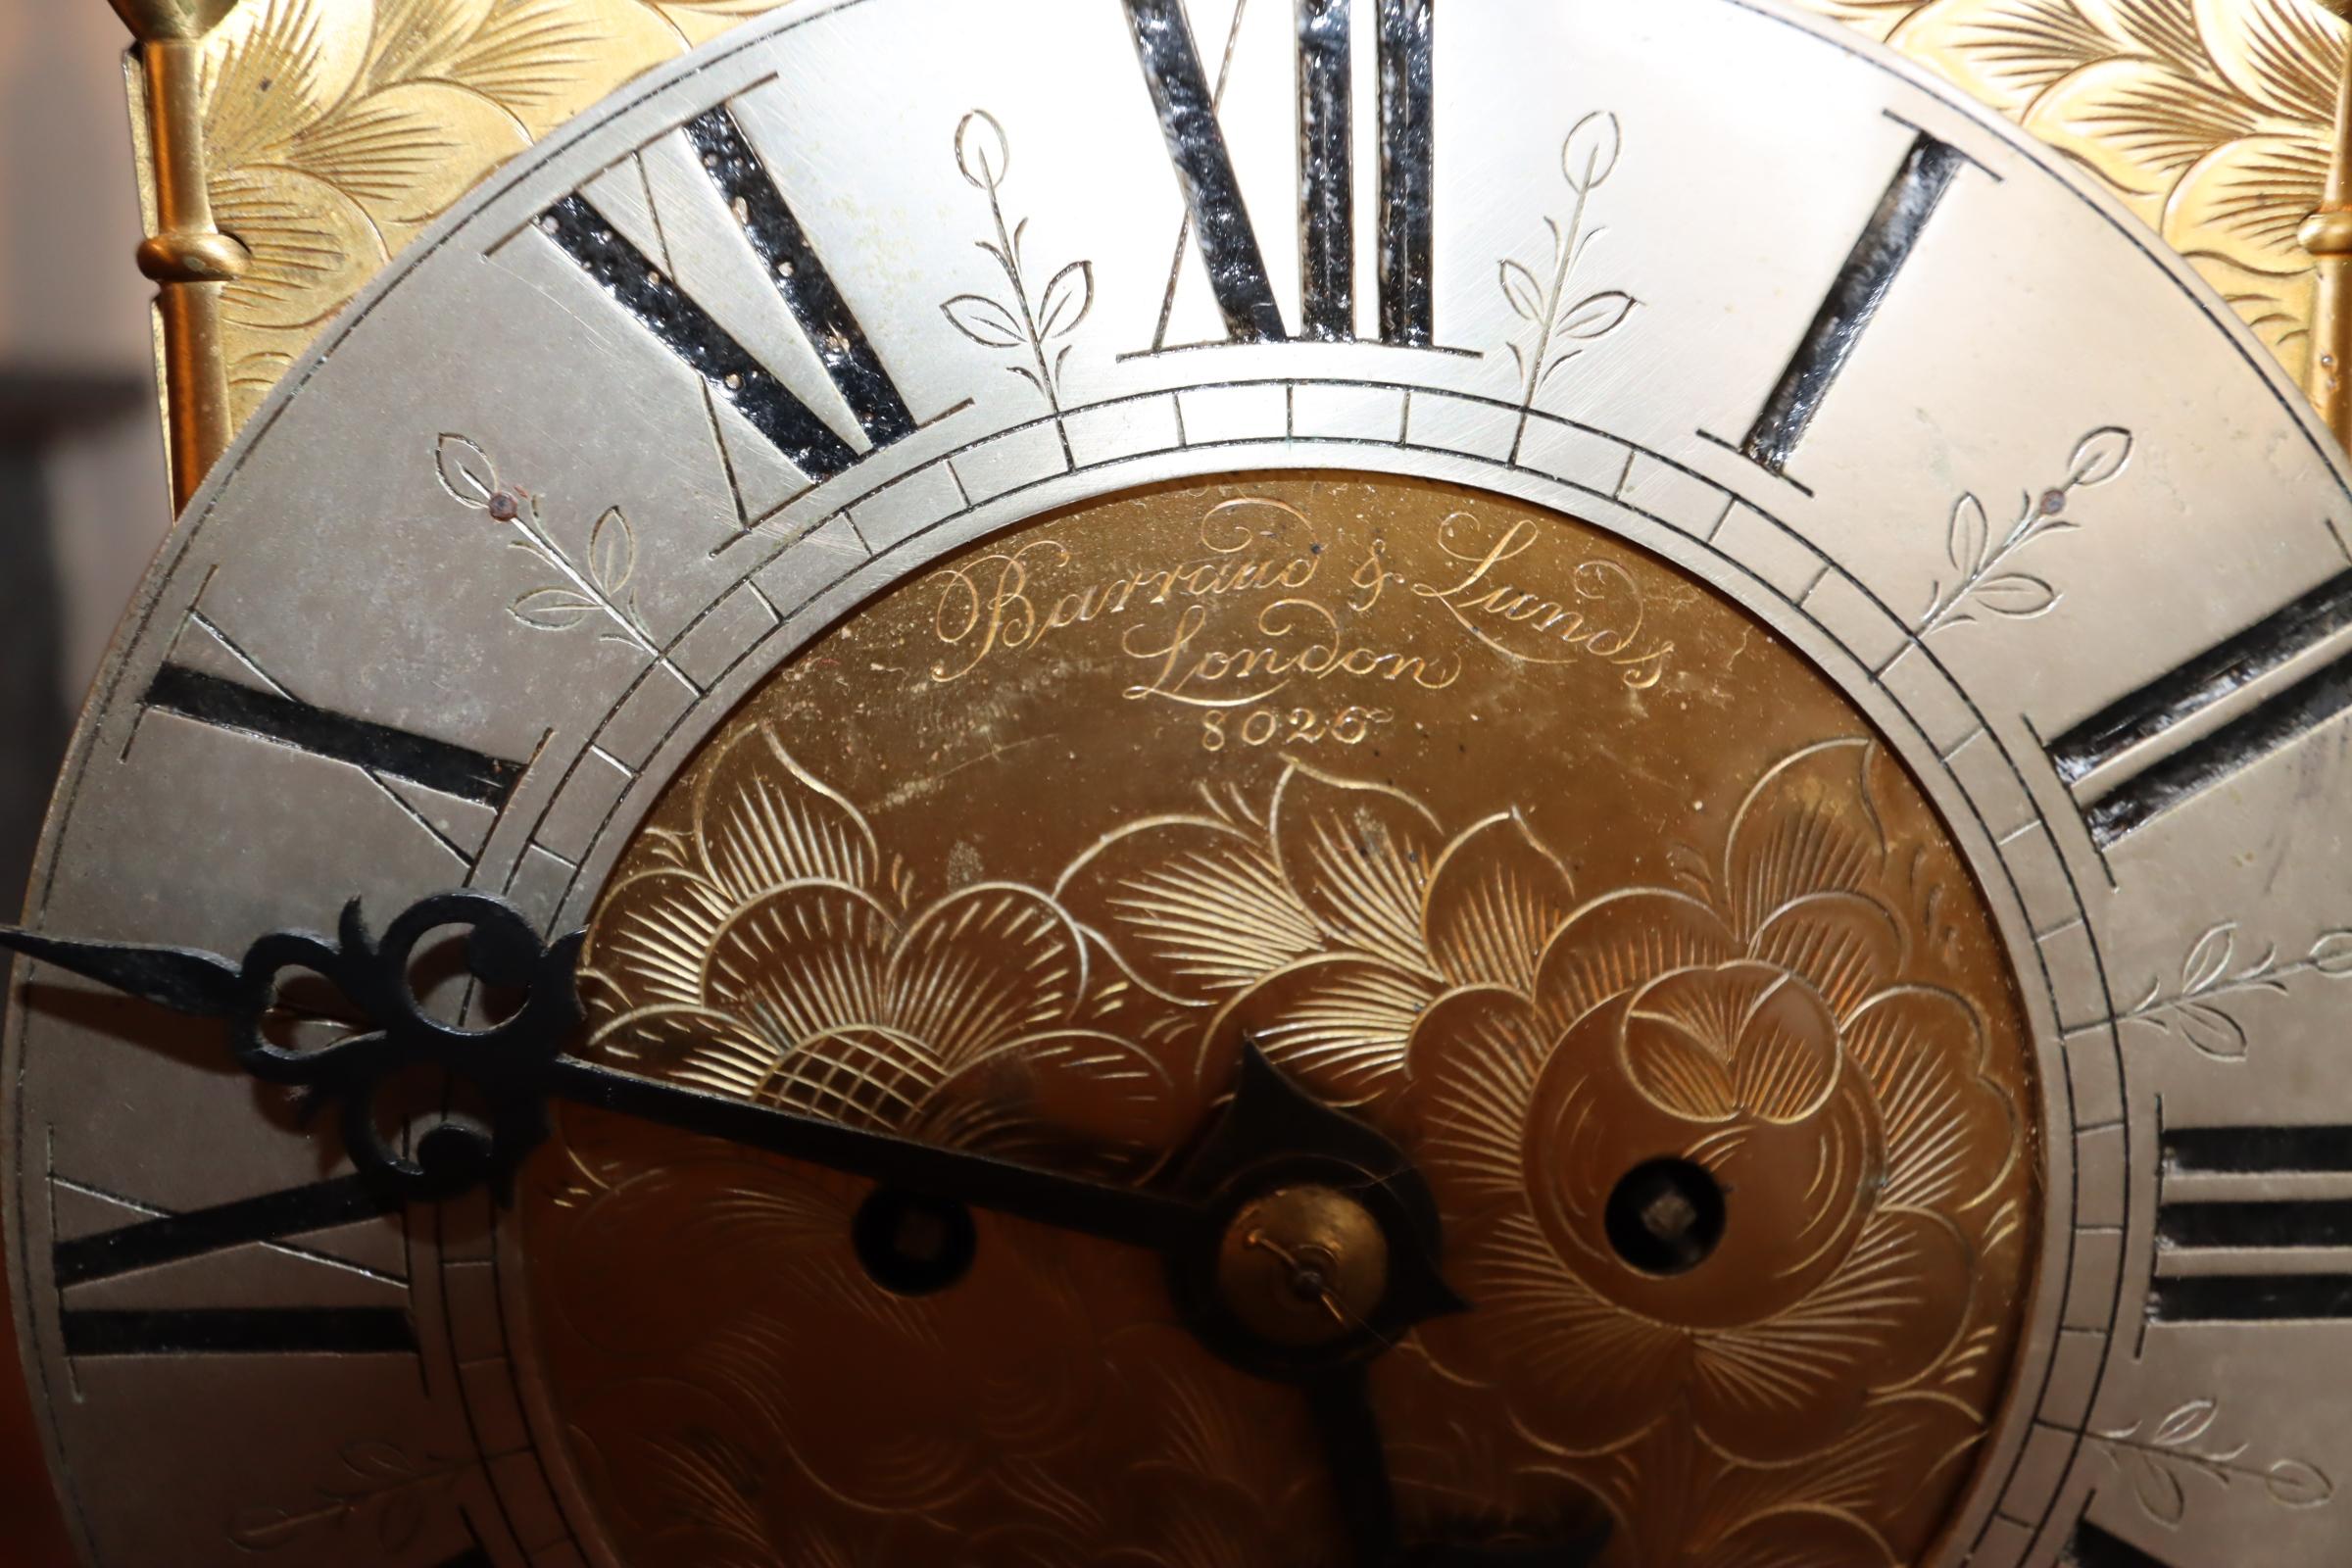 Eine exquisite Laternenuhr aus Messing aus dem 18. Jahrhundert, eine meisterhafte Verbindung von Eleganz und Funktionalität. Der aus glänzendem Messing gefertigte Zeitmesser ist mit filigranen Laubsägearbeiten versehen, die den laternenförmigen